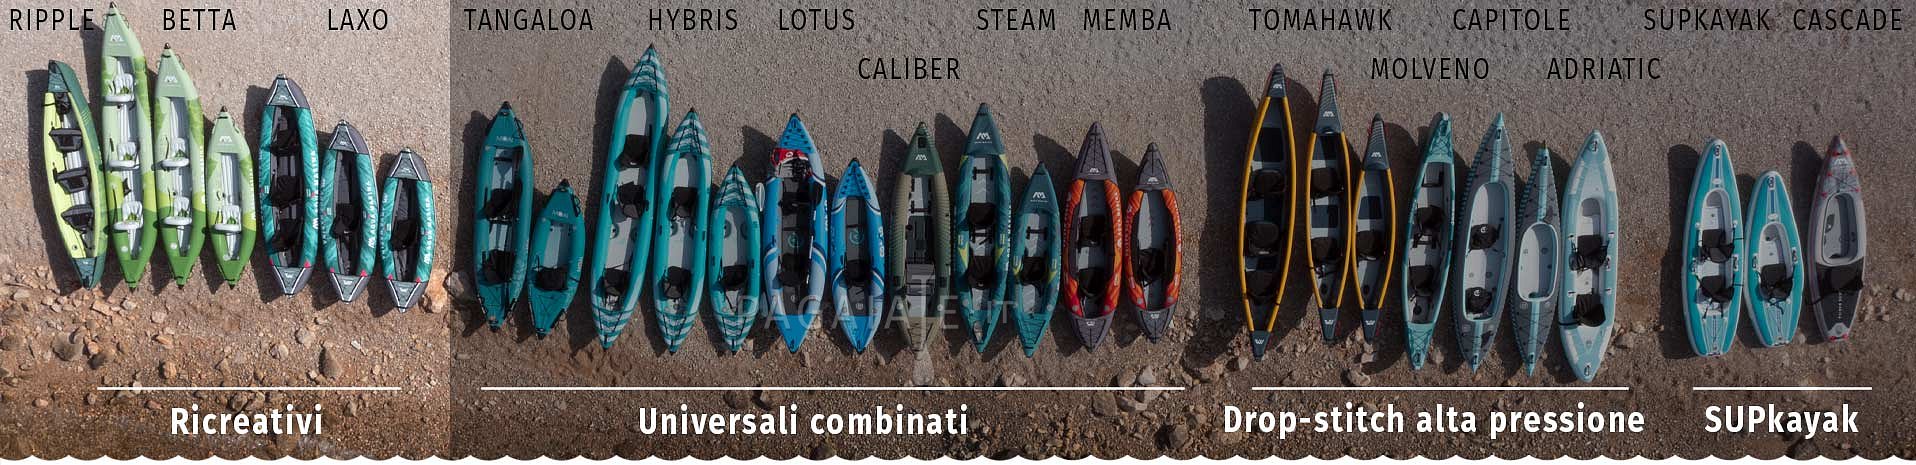 Kayak gonfiabili - ricreativi a bassa pressione